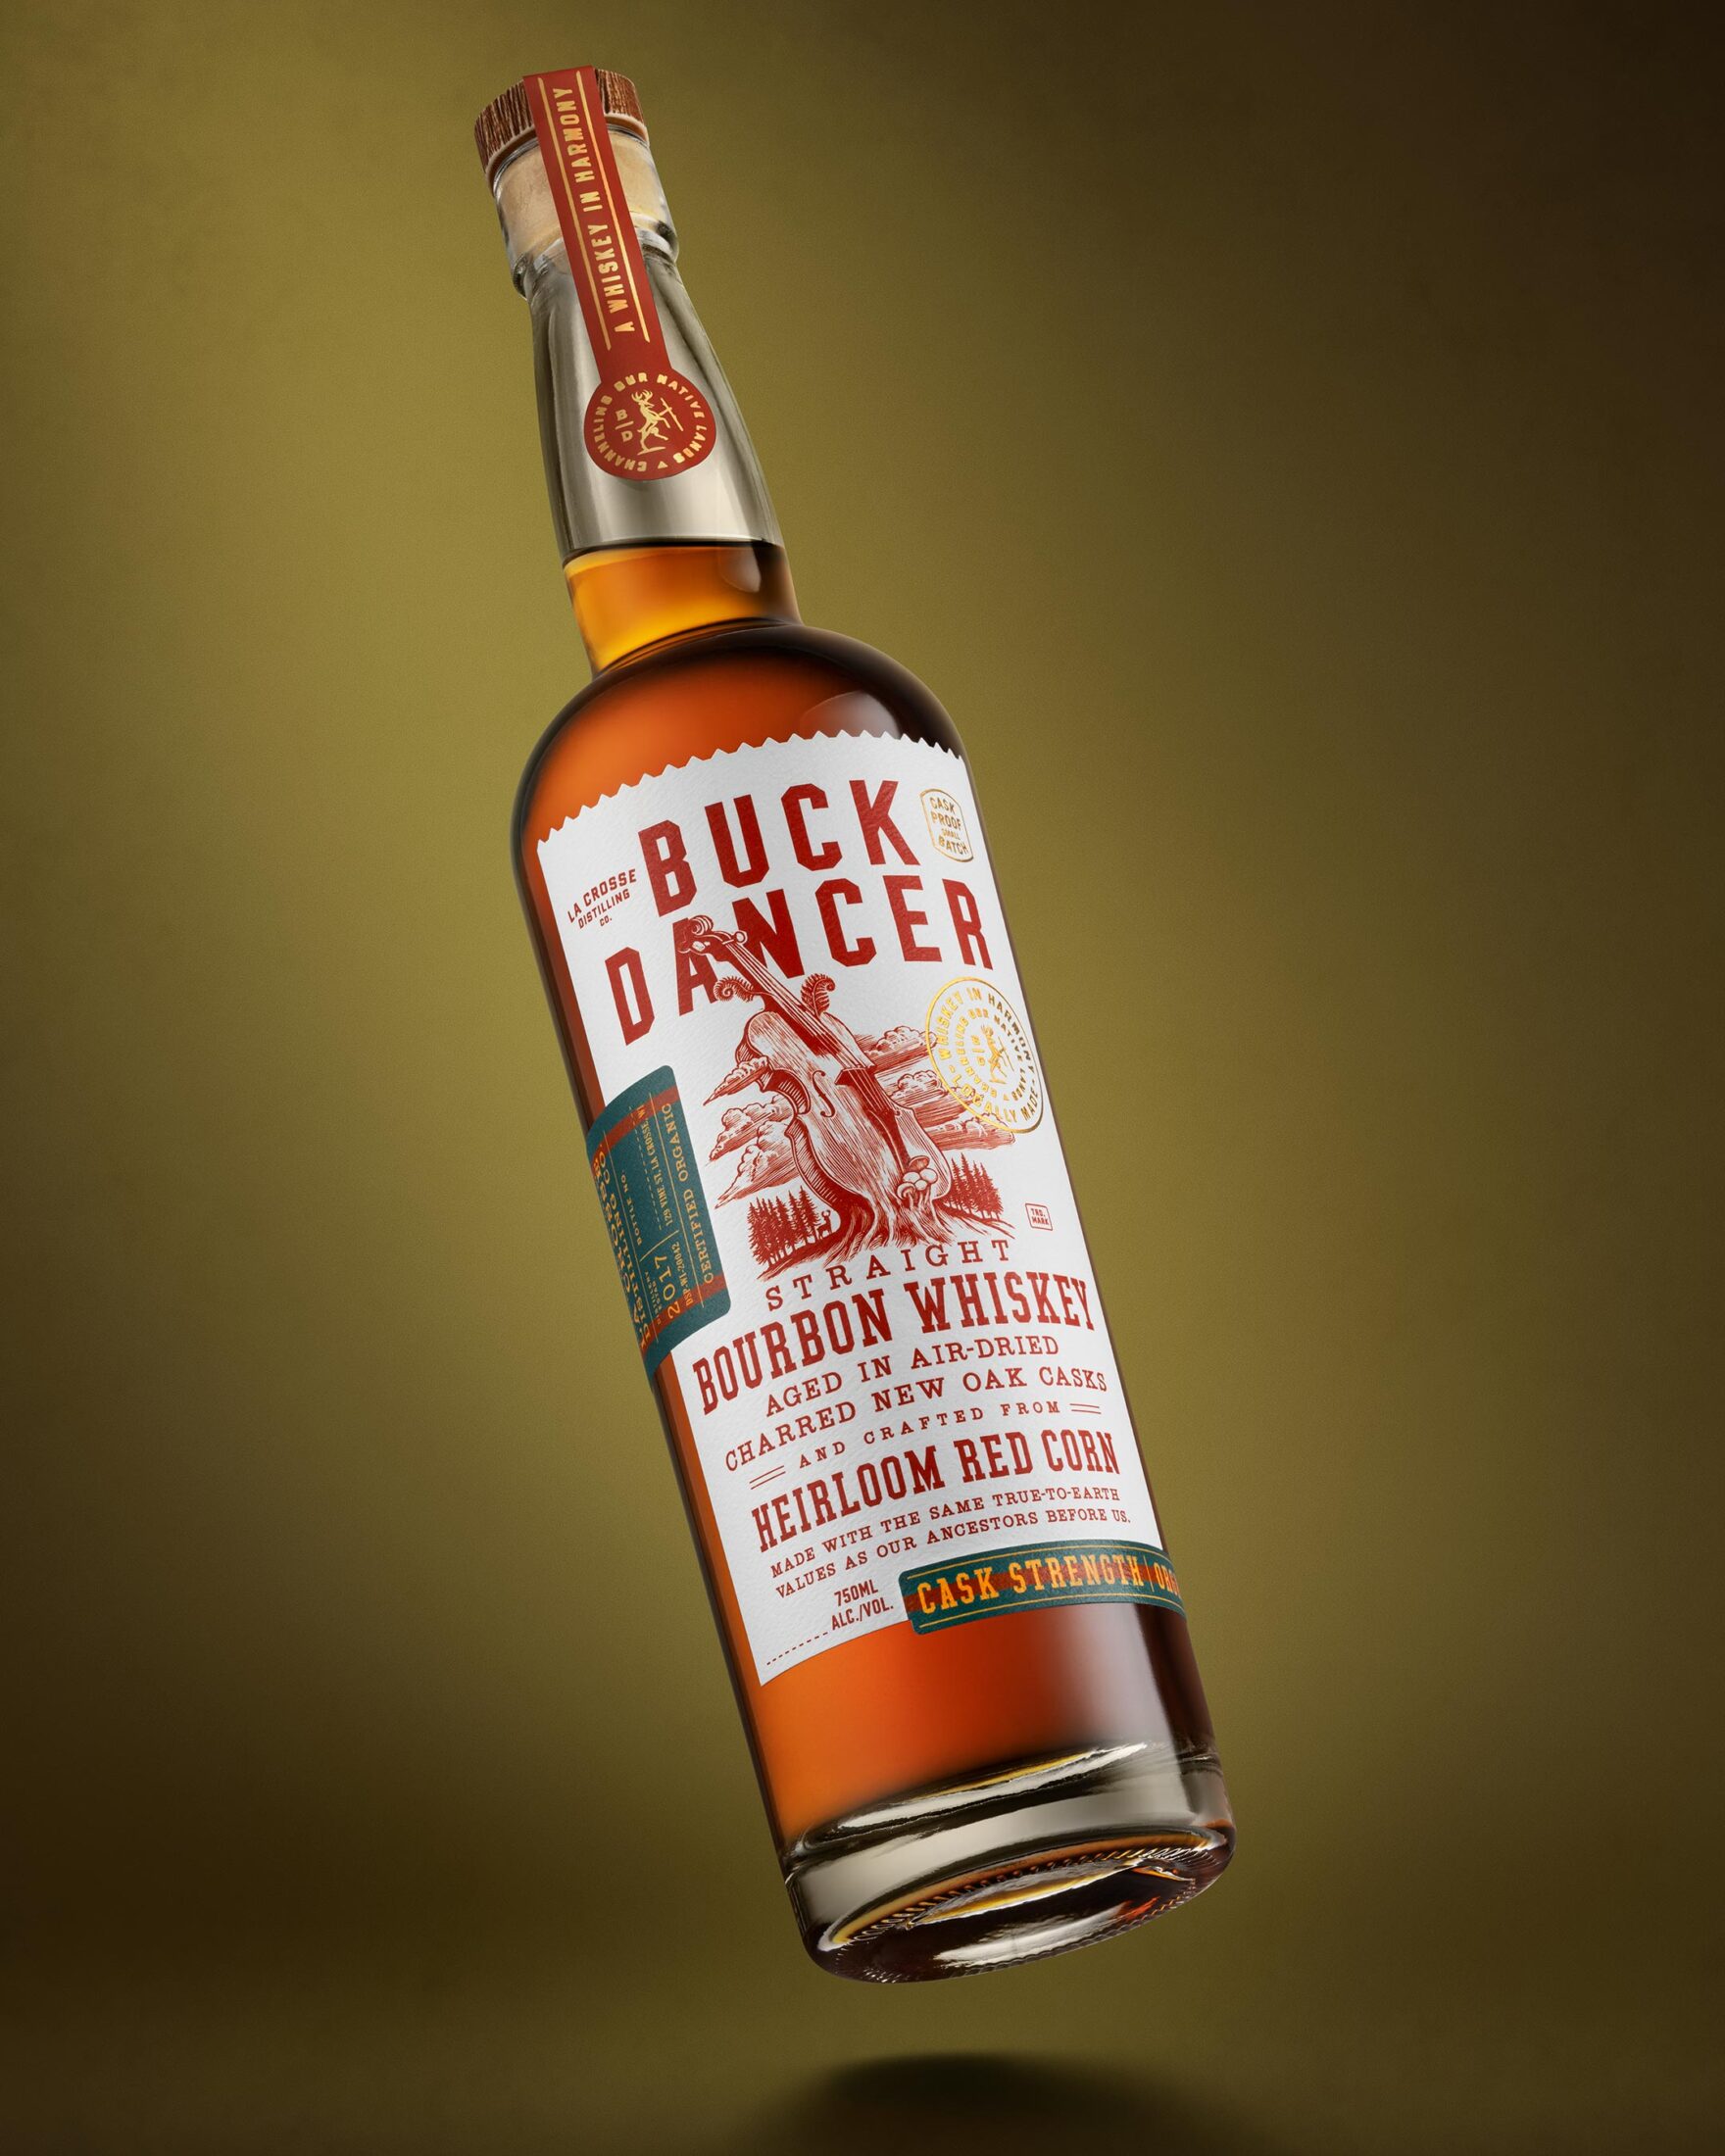 Buck Dancer Bourbon Whiskey branding and package design